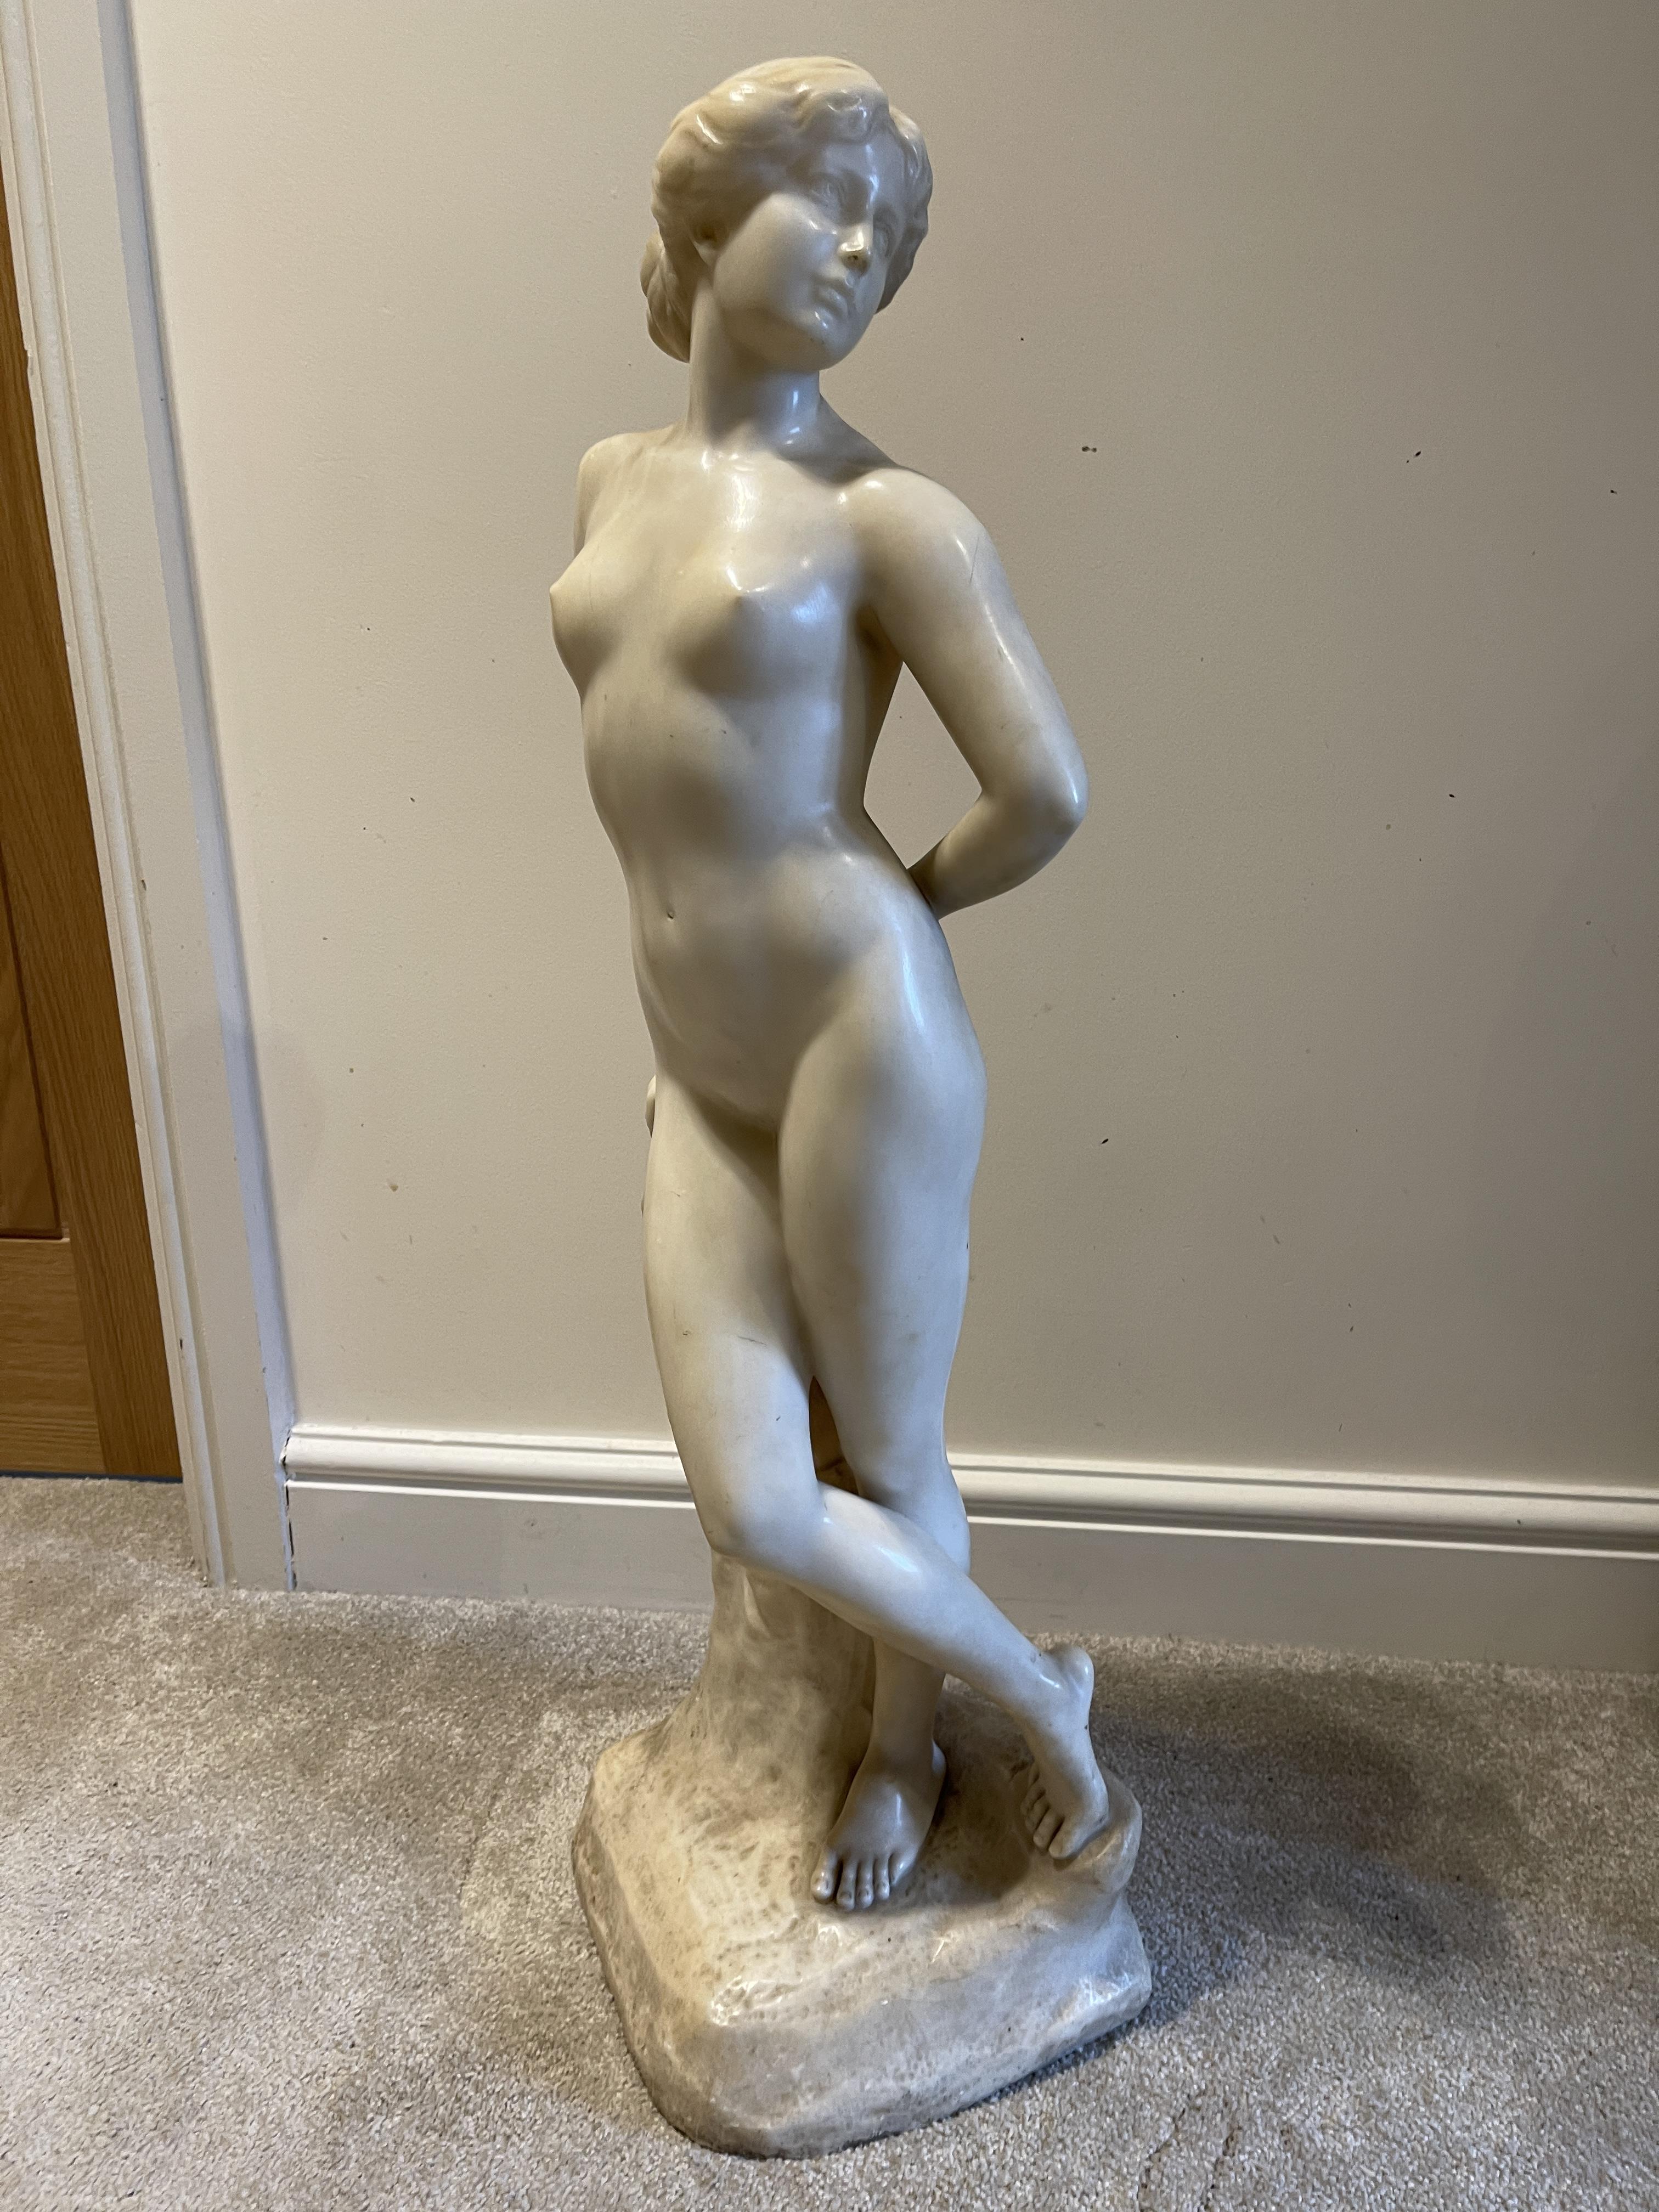 Ernst Seger Jugendschil Alabaster nude of a woman - Image 2 of 10